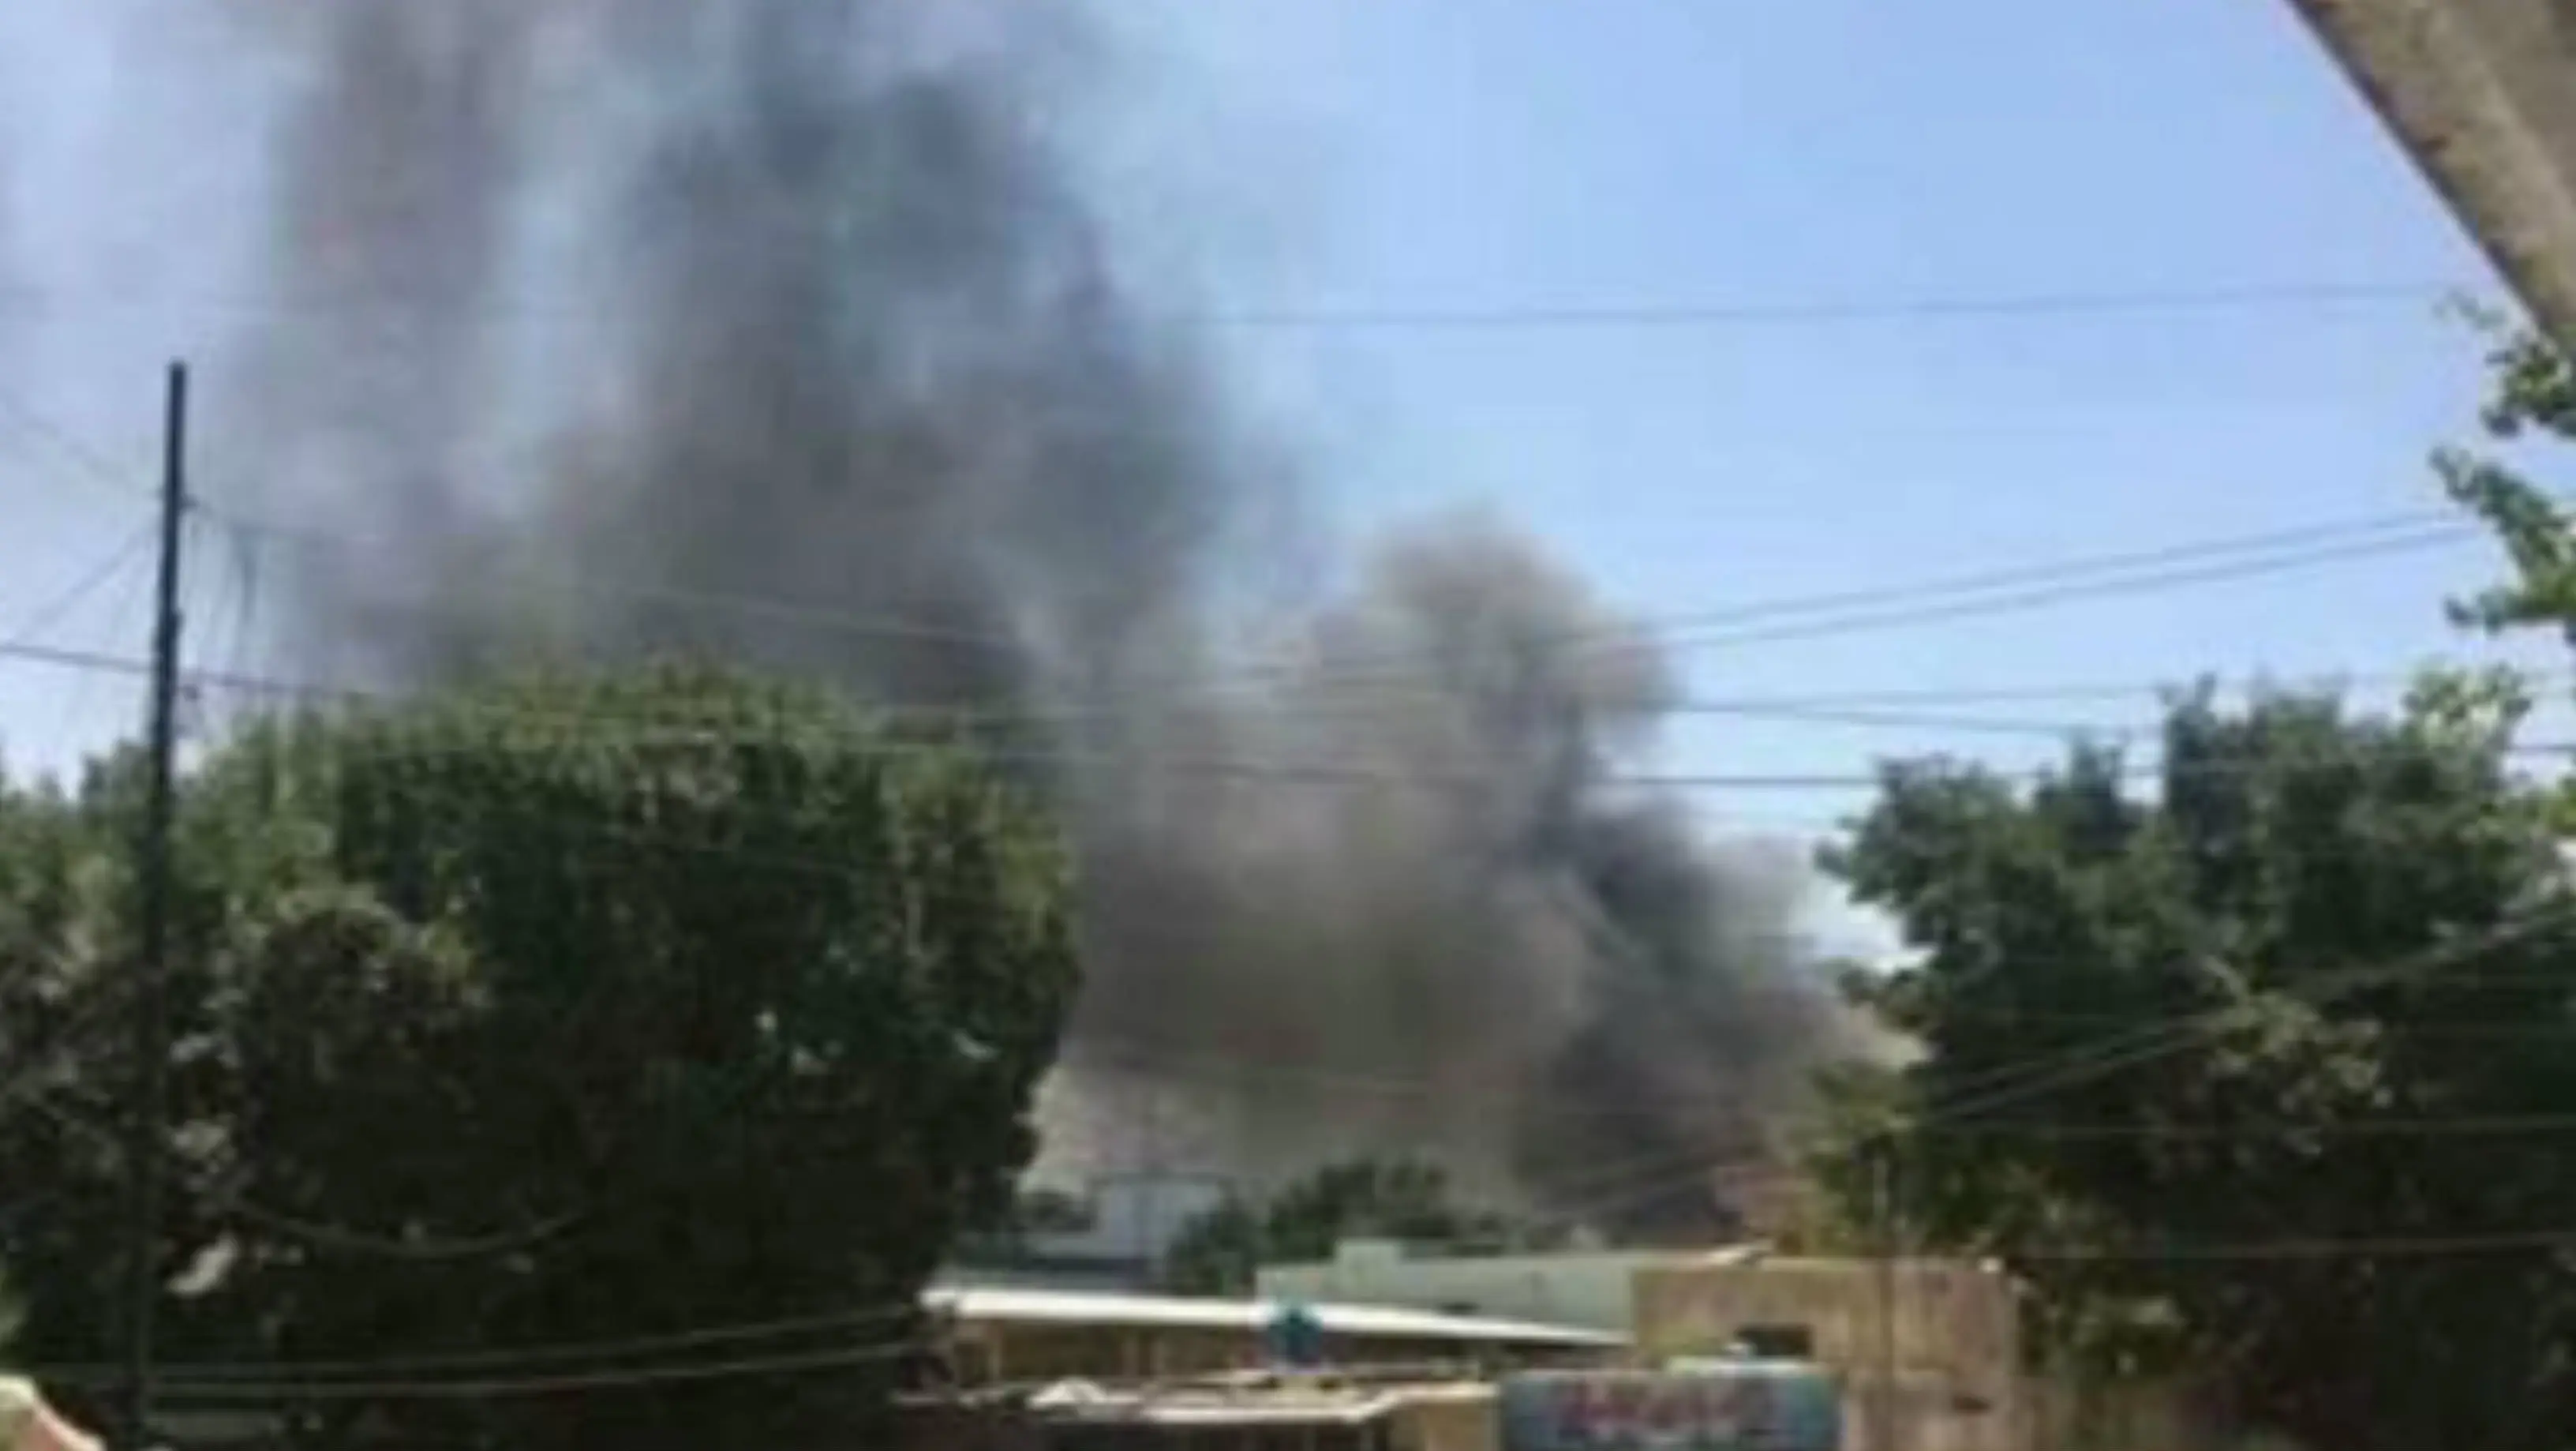 Asap hitam di lokasi bom bunuh diri di luar kedutaan irak di Kabul Afghanistan. (Twitter/@TerrorEvents)